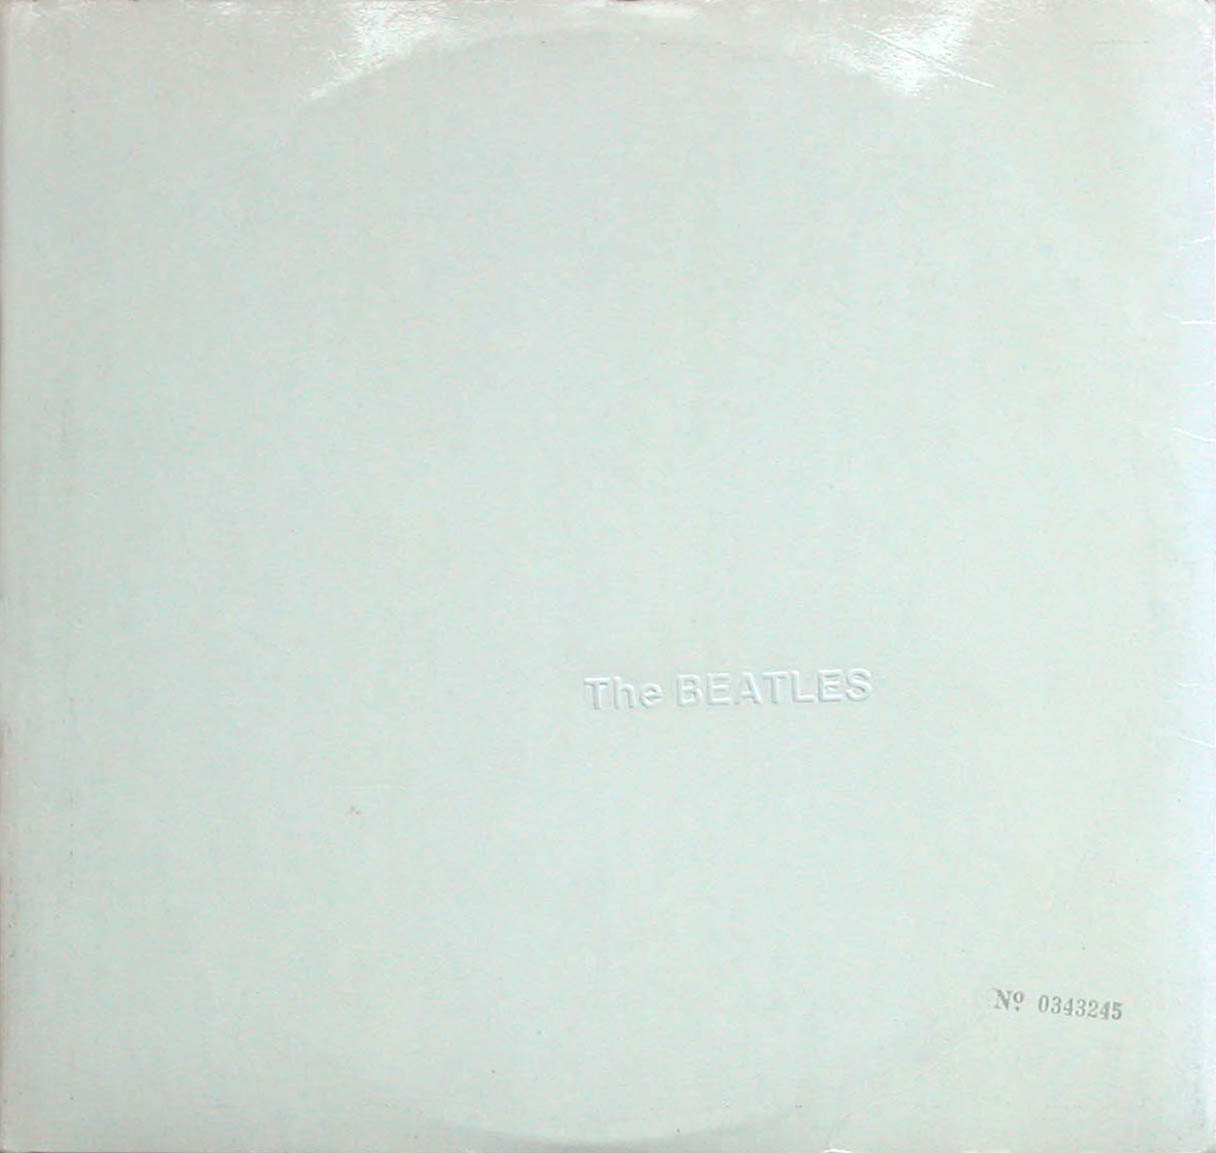 beatles album covers white album